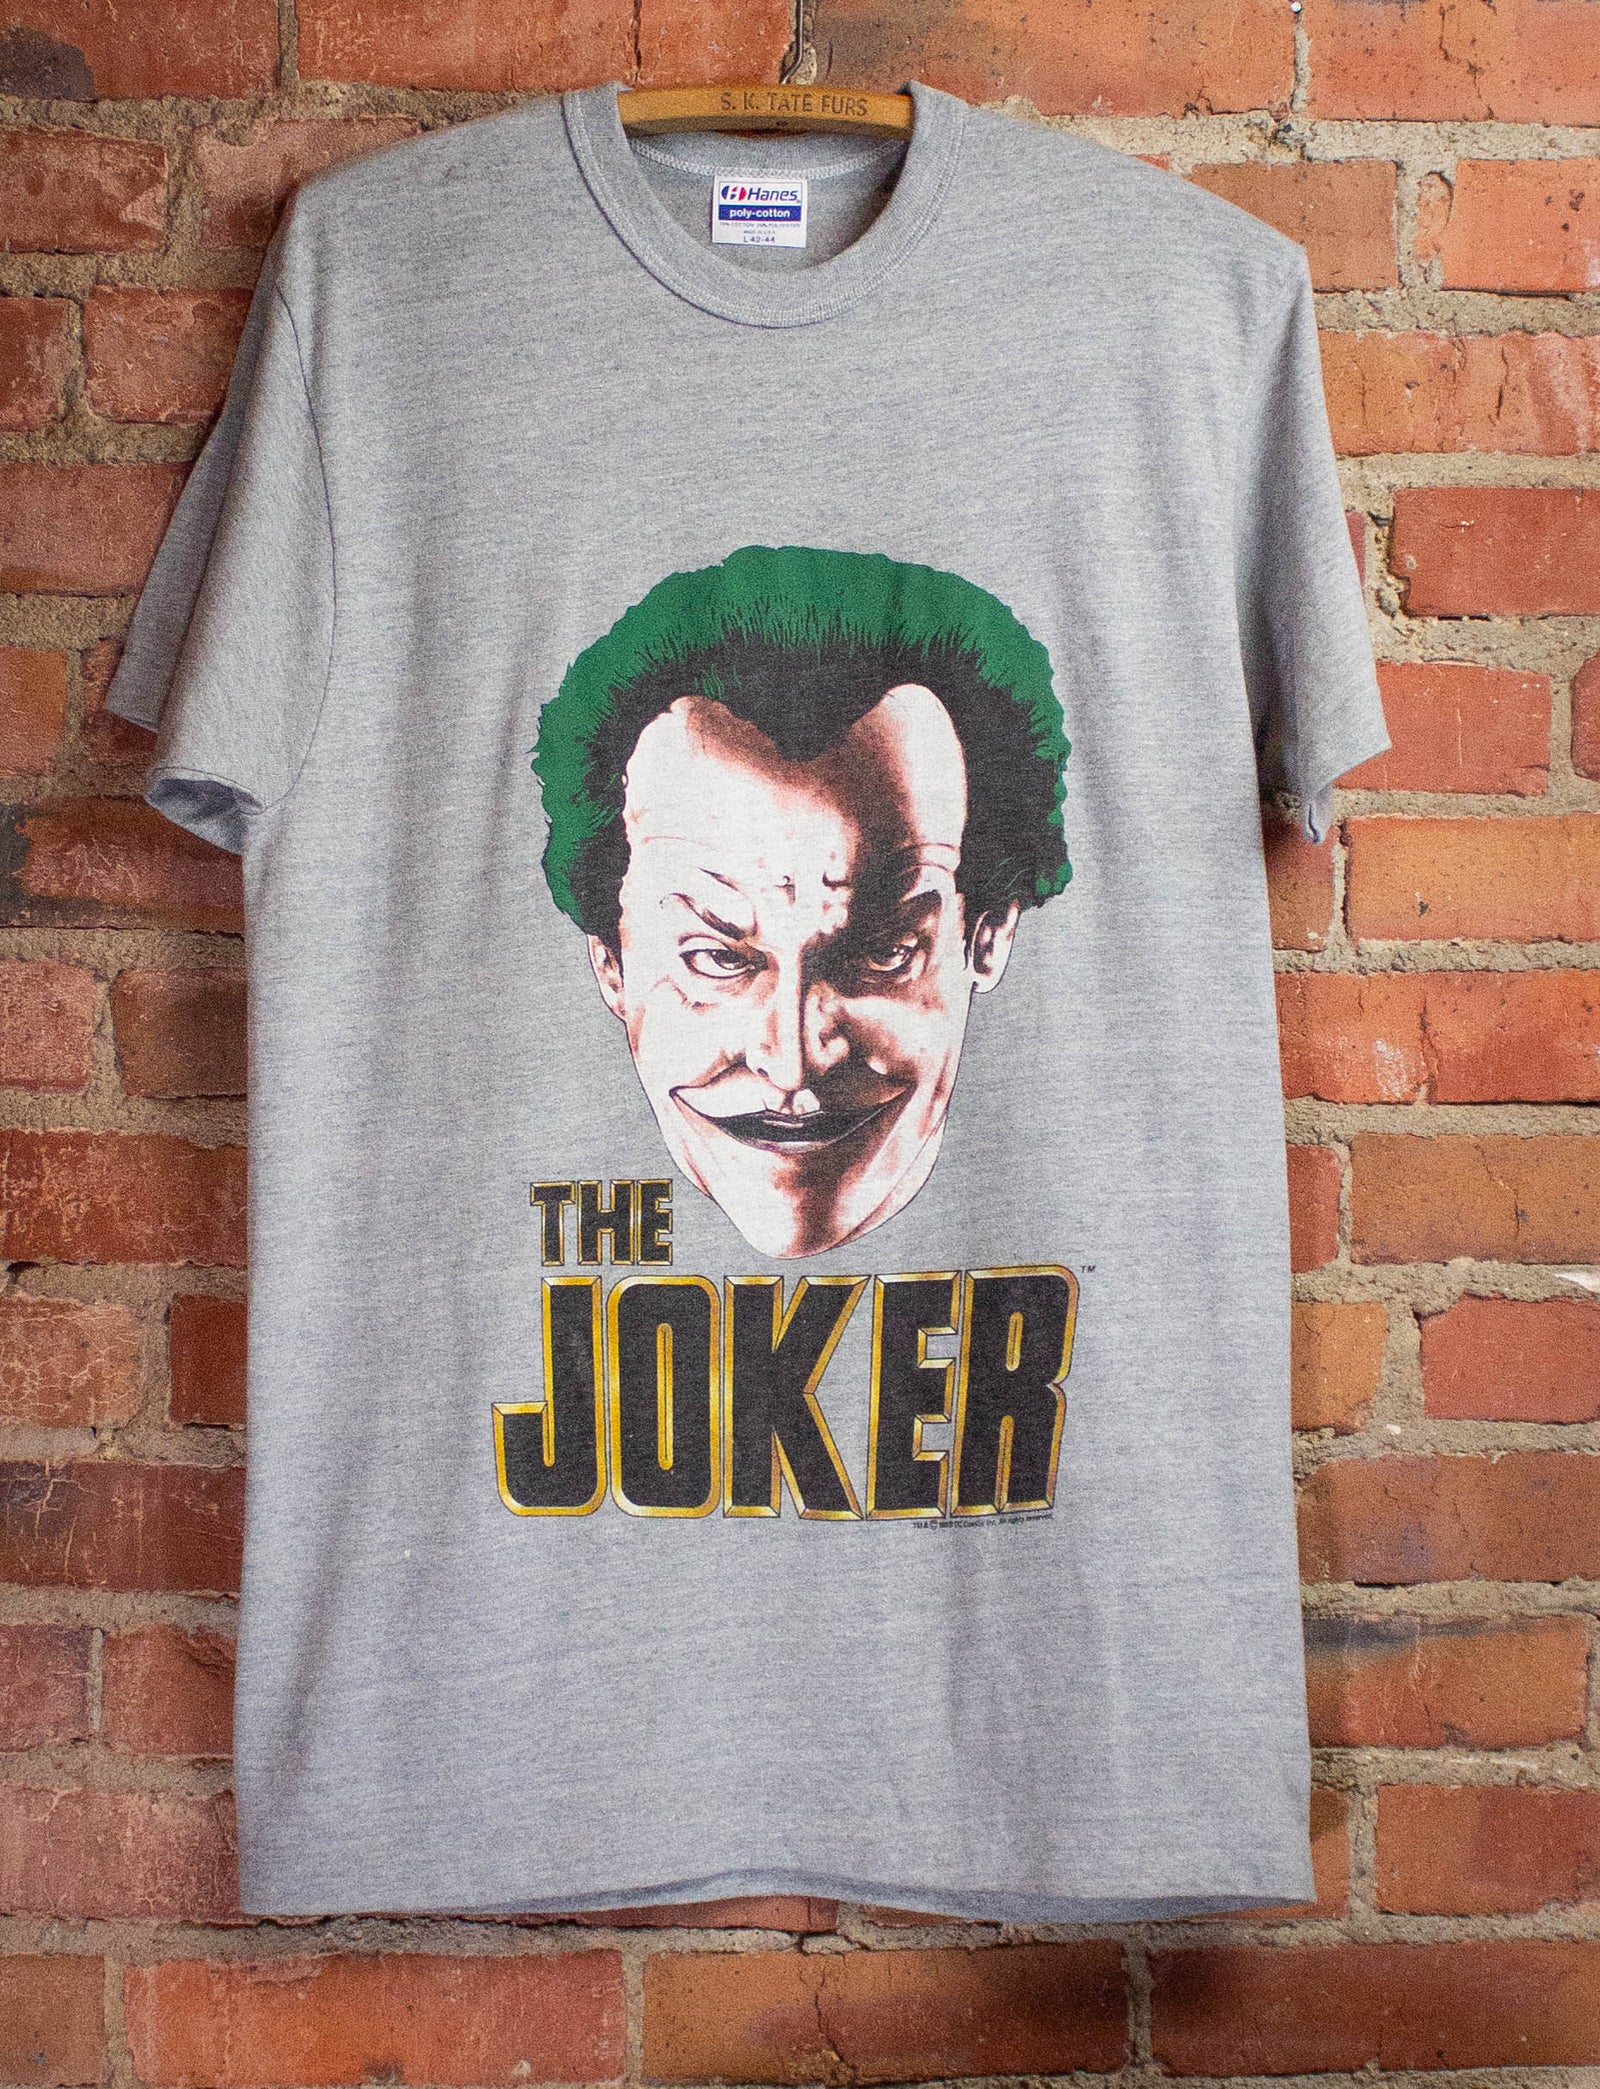 Vintage The Joker's Back Batman Graphic T-Shirt 1989 M